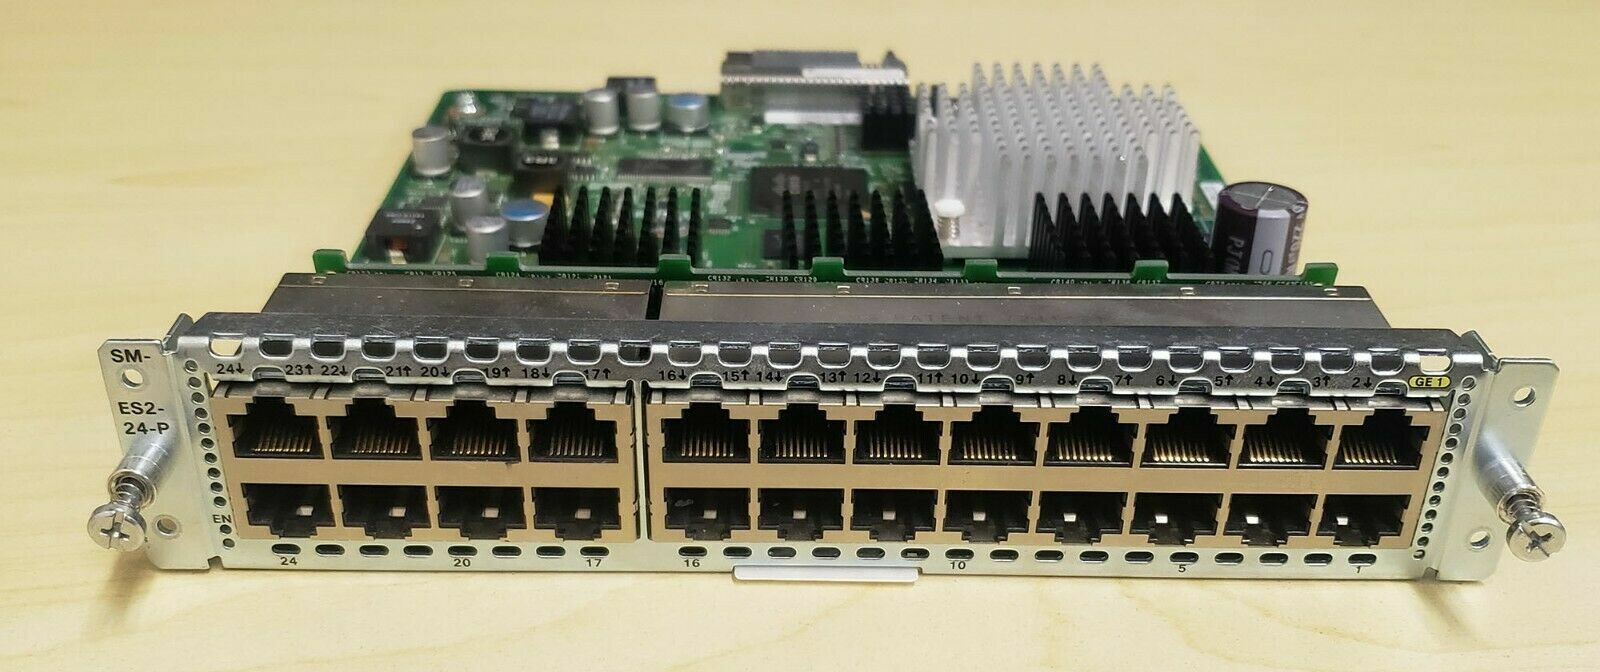 Cisco SM-ES2-24-P 24-Port POE+ Capable Layer 2/3 LAN SM-X EtherSwitch KAJ